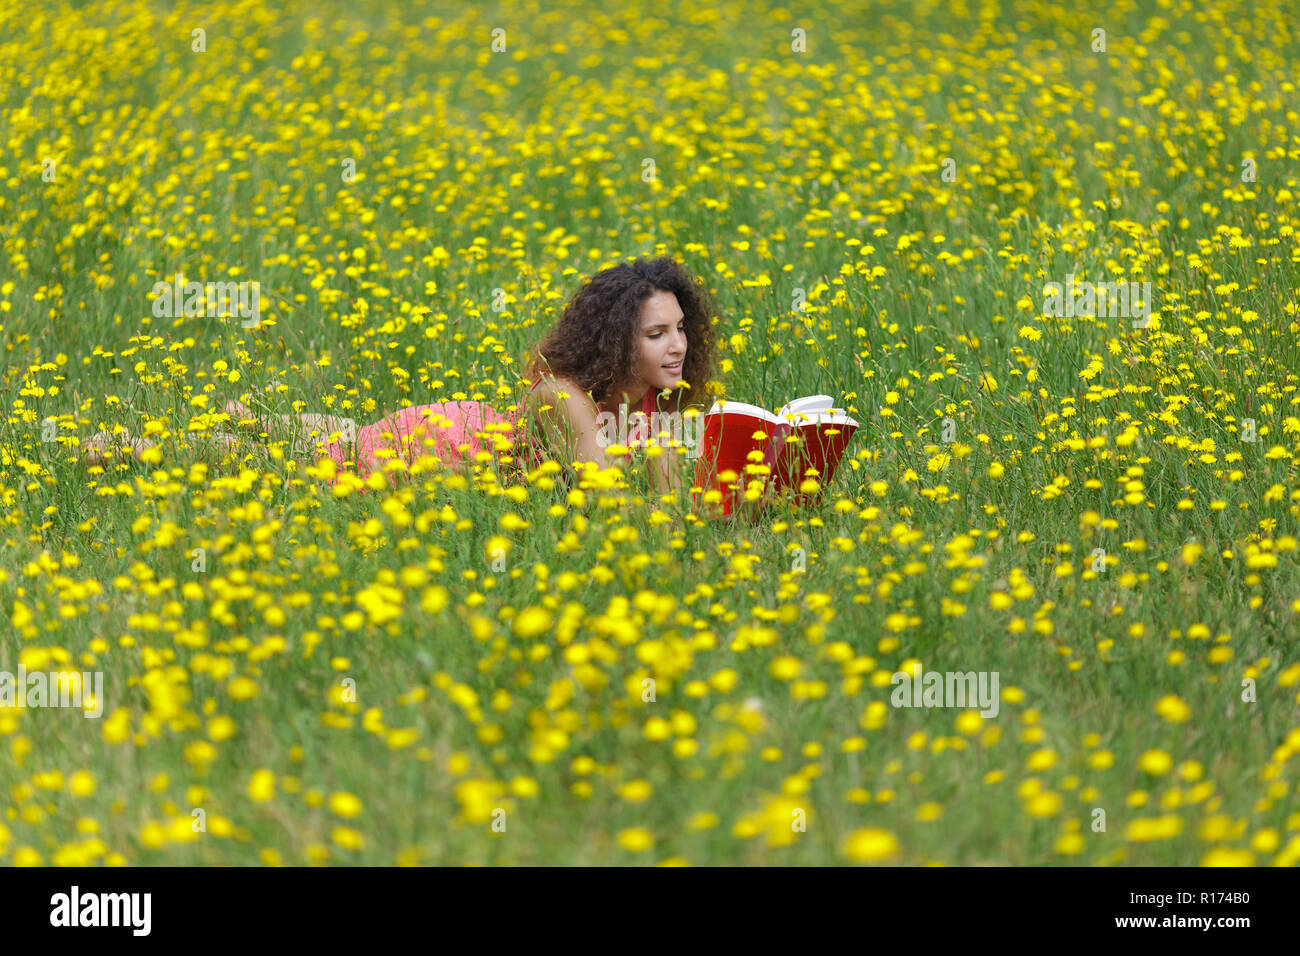 Jolie jeune femme avec des cheveux bouclés qui lit un livre dans une prairie de fleurs sauvages jaunes des fleurs d'été alors qu'elle se détend dans la tranquillité Banque D'Images